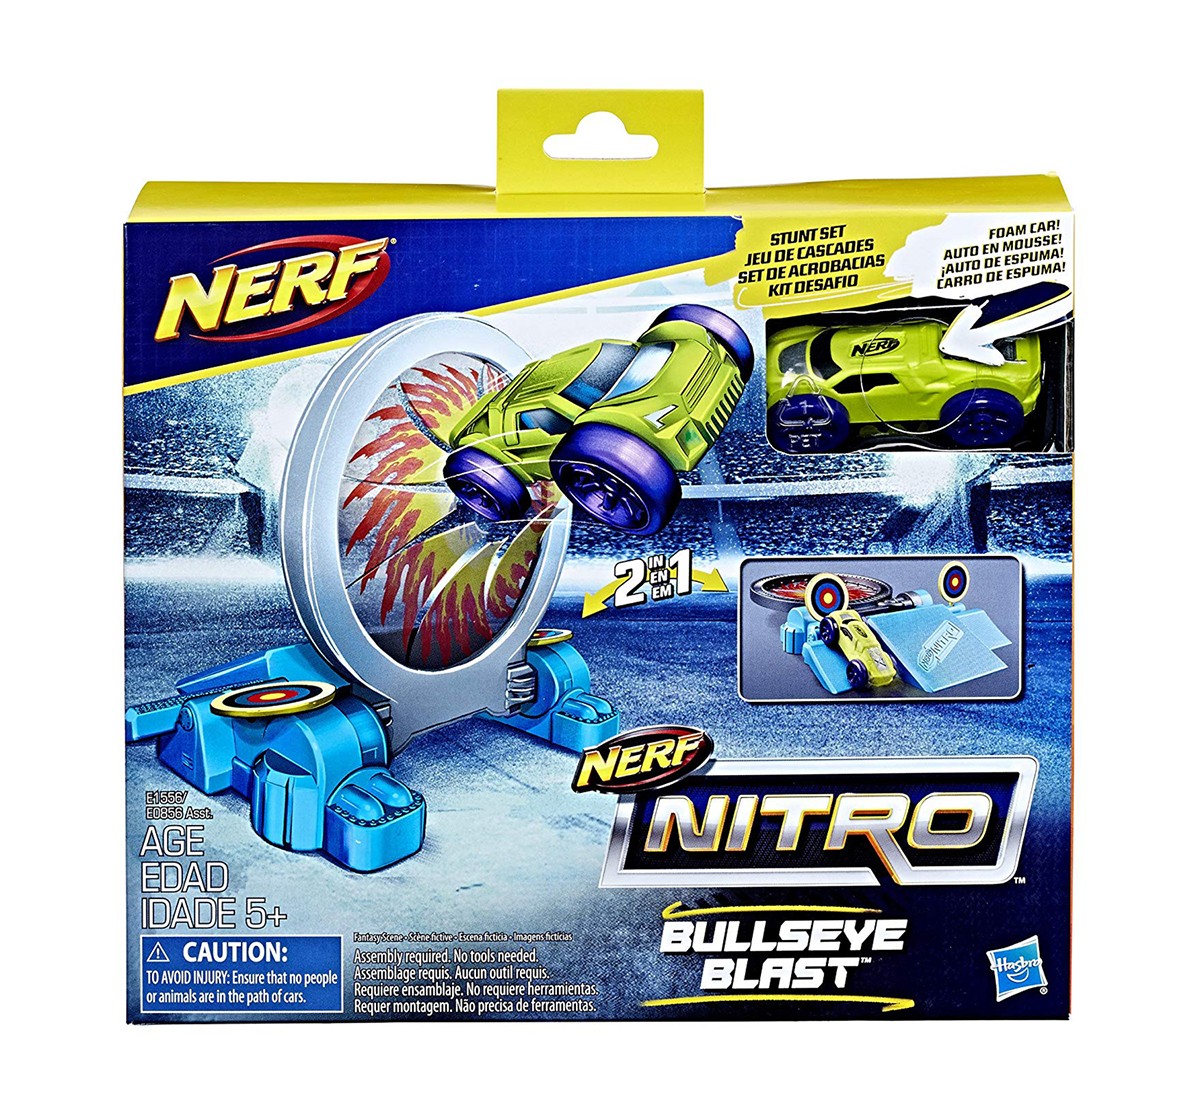 Nerf Nitro Bullseye Blast Stunt Set Tracksets & Train Sets for Kids age 4Y+ 